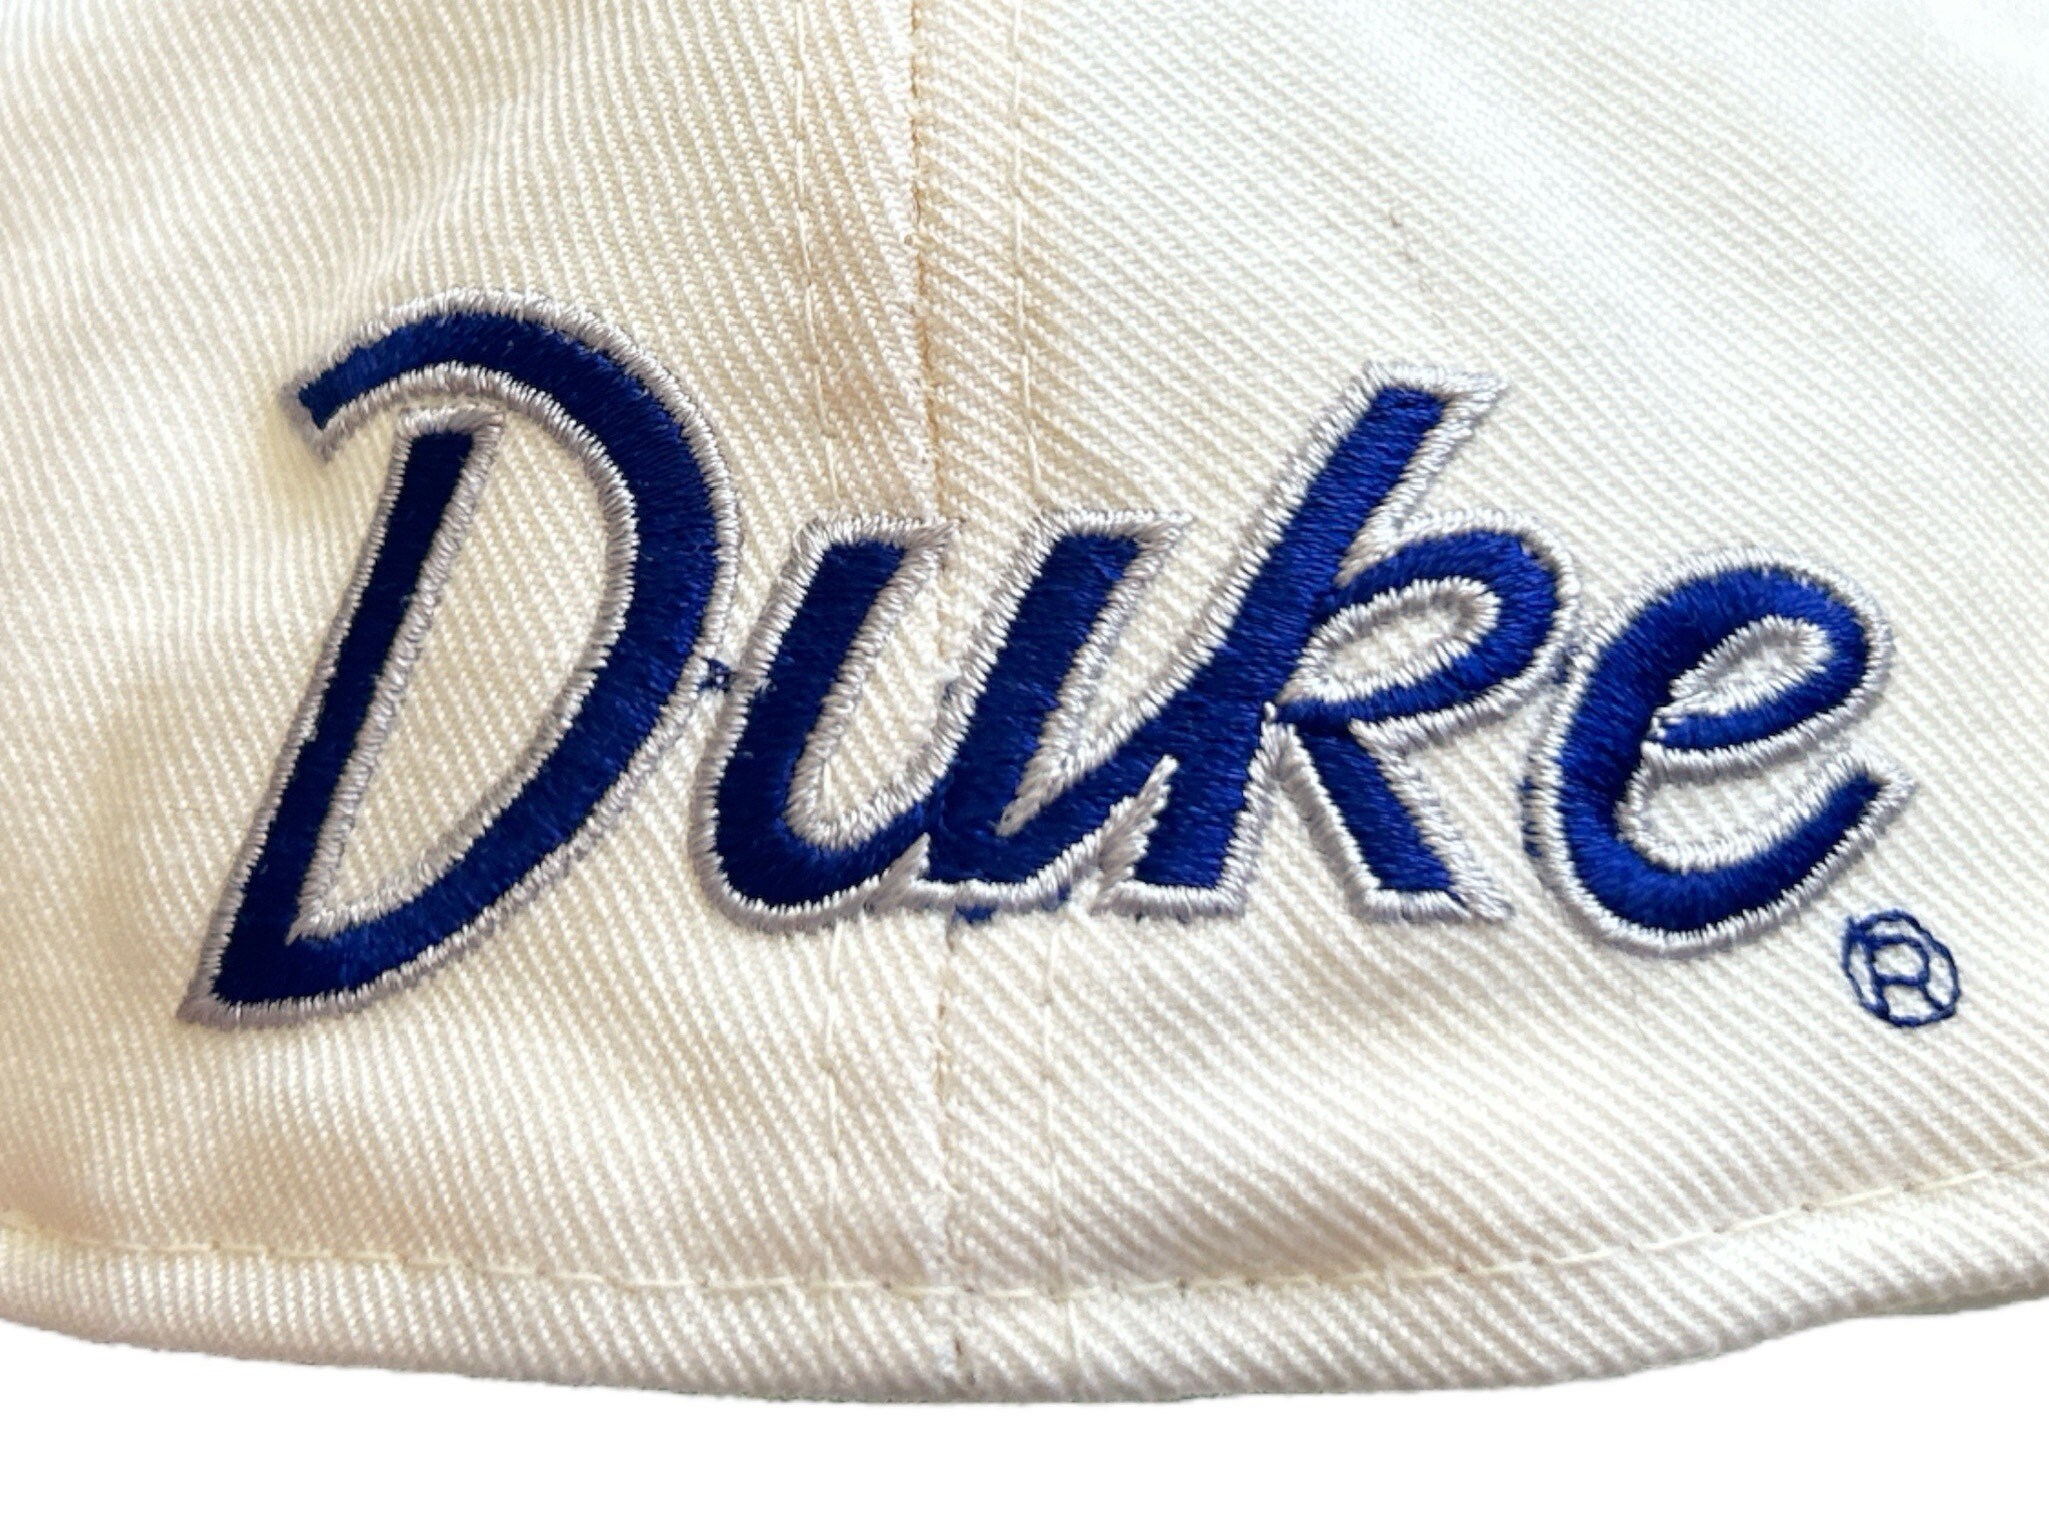 Vintage 90s Tipton Blue Devils Adjustable Snapback Baseball Hat